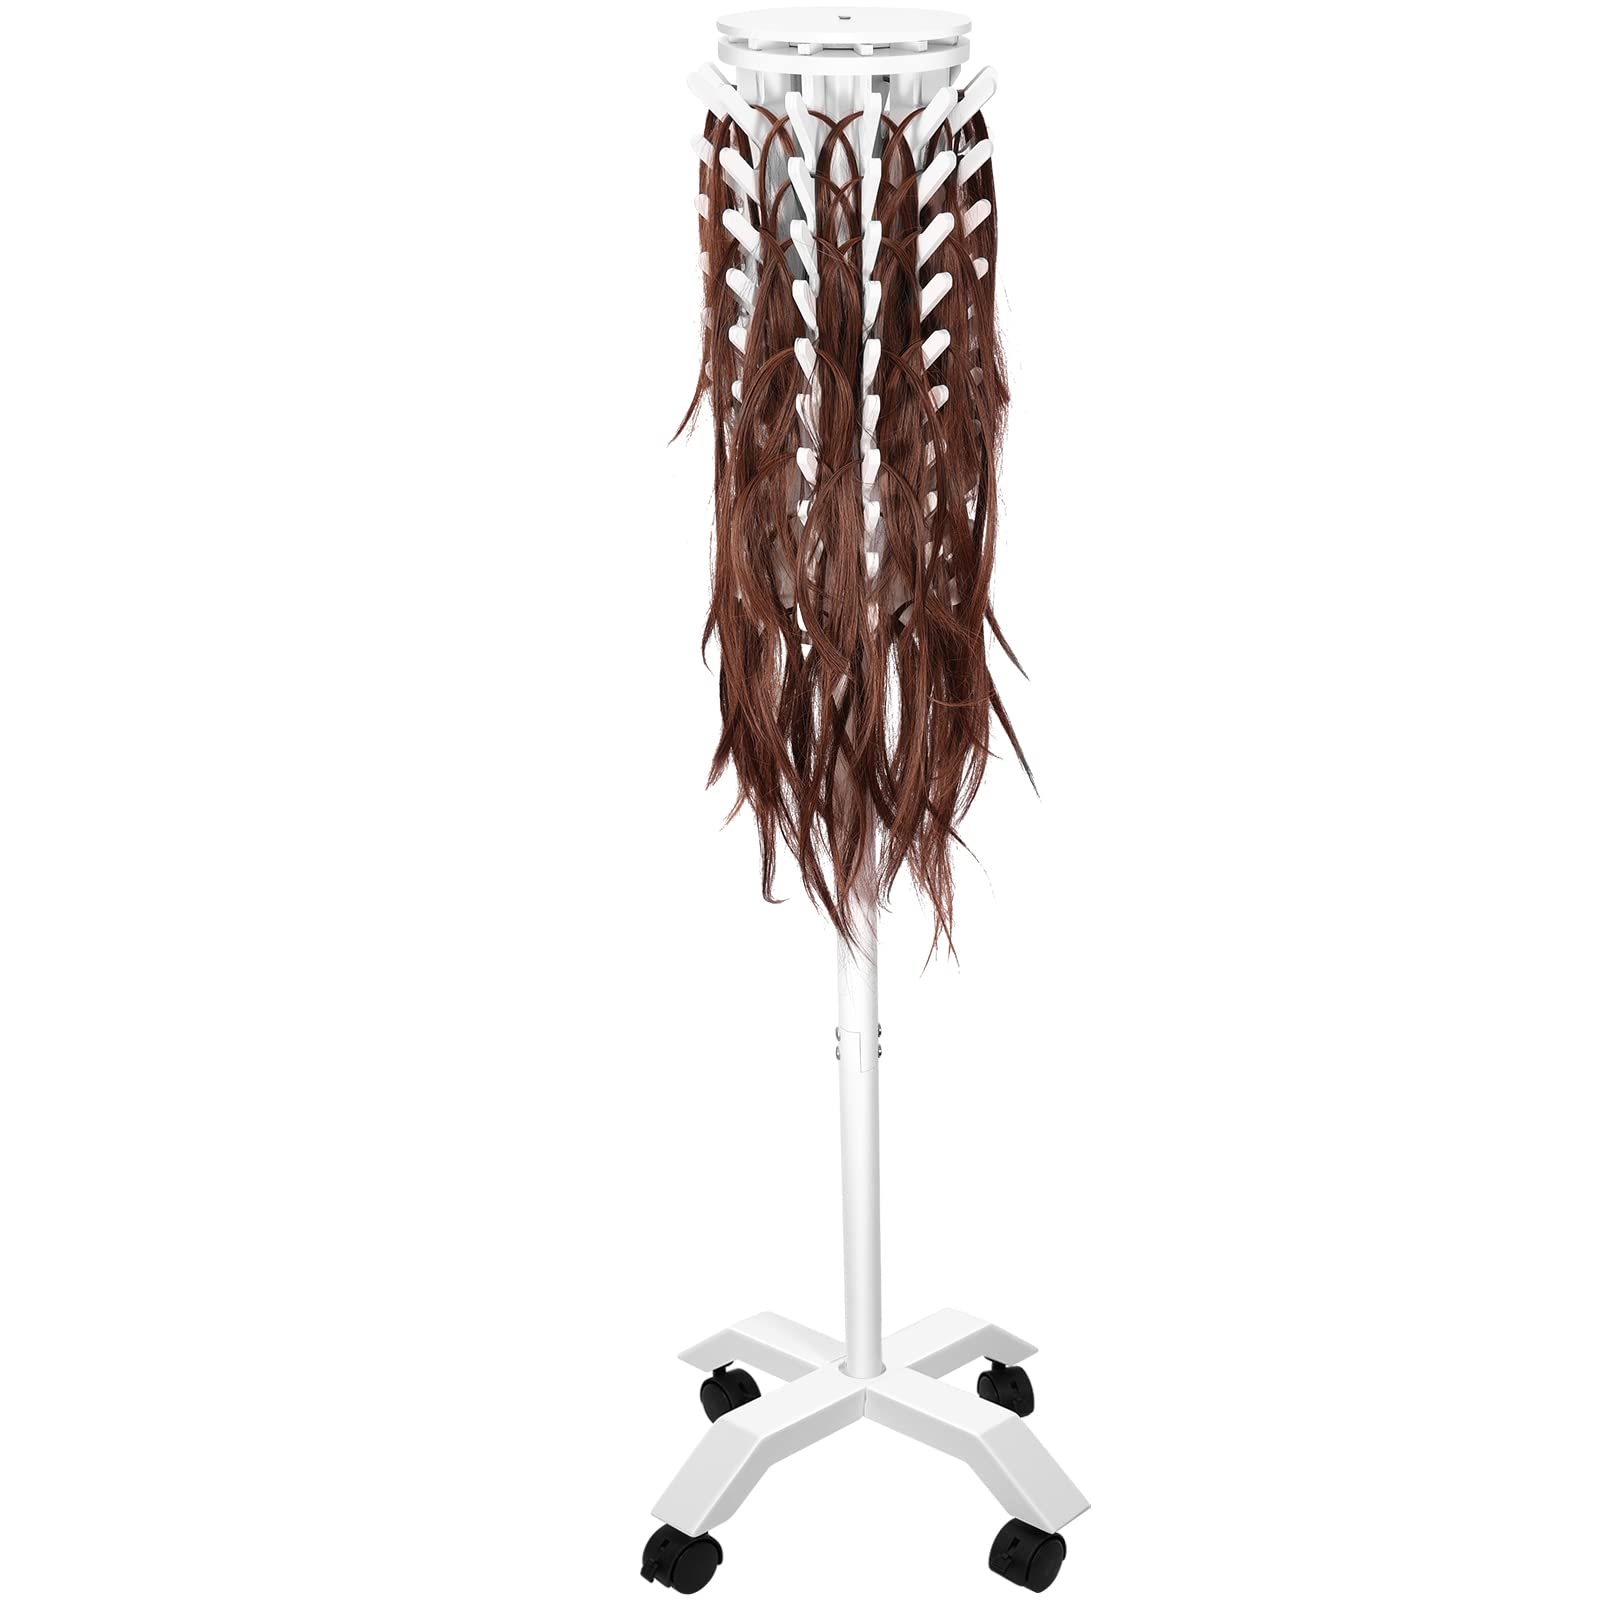  3-in-1 Braiding Hair Rack, 120 Pegs Wall Mount Hair Stand  For Braiding Hair, Multipurpose Hair Separator Rack, Standing Hair  Extension Holder Braider Rack Stand For Hair Stylist, Hair Salon